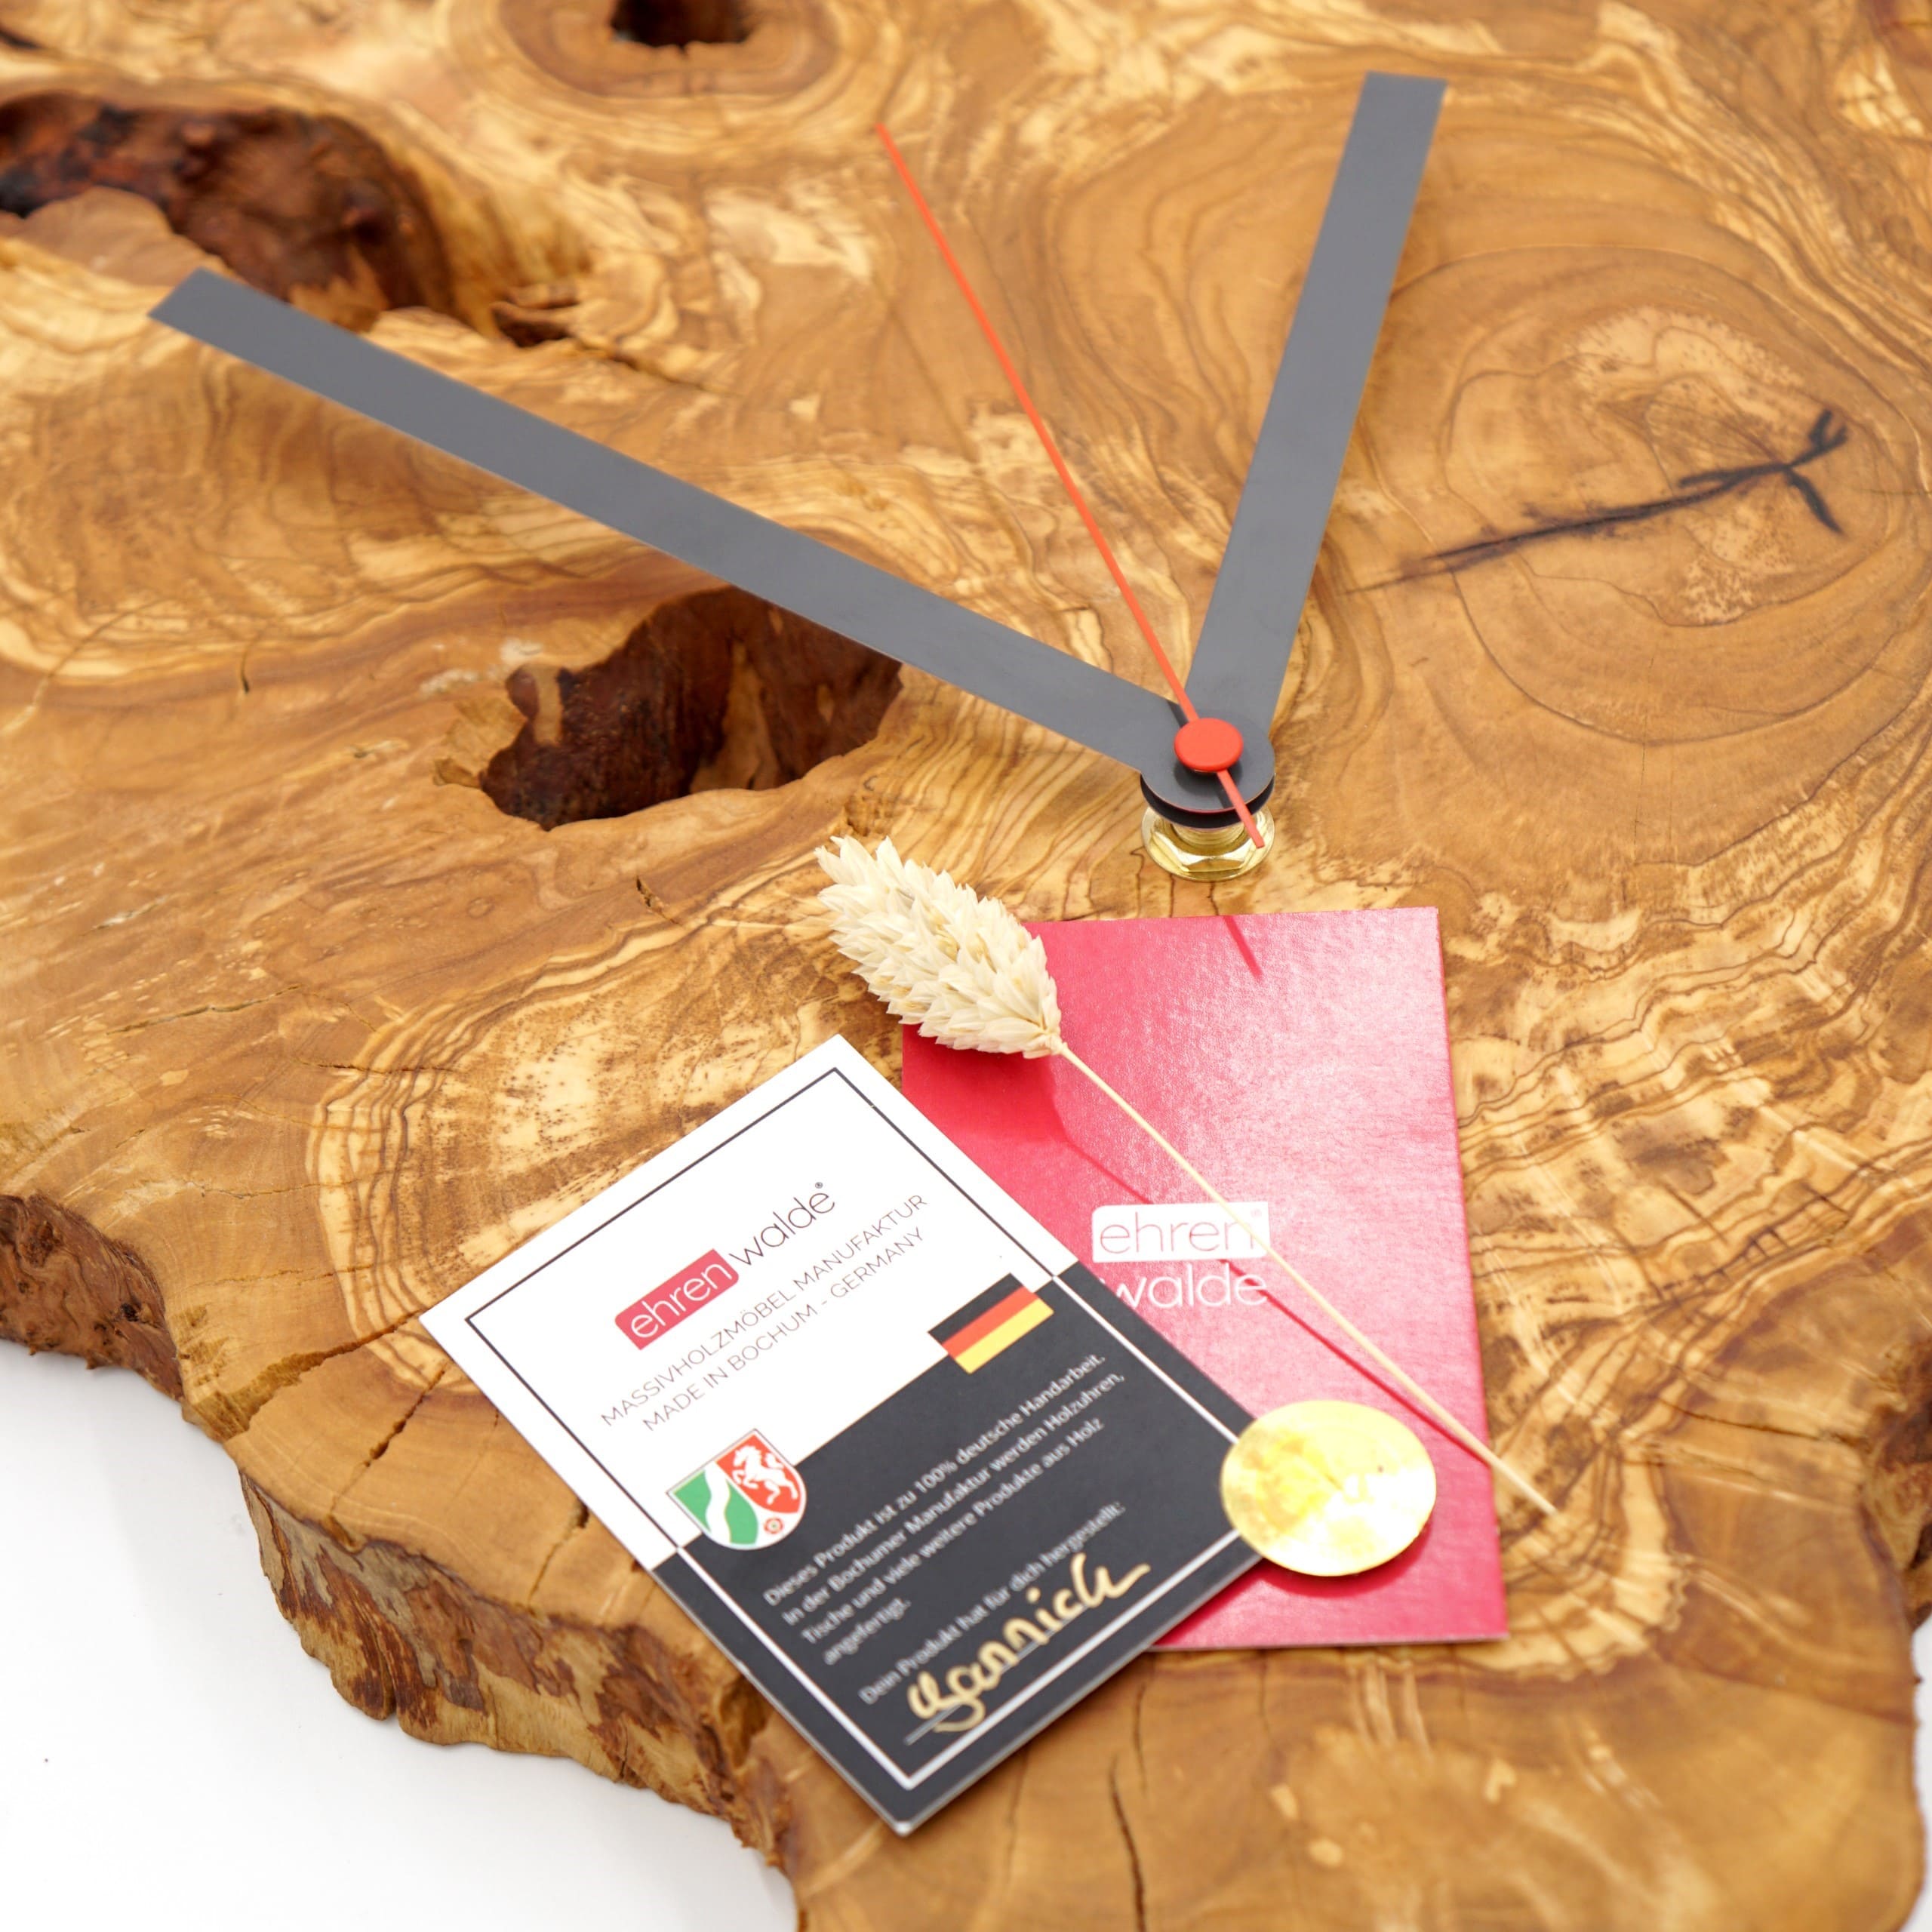 Olivenholz Wanduhr aus Massivholz mit Anthrazit-Zeigern und lautlosem Uhrwerk Atmos Detail mit Karte